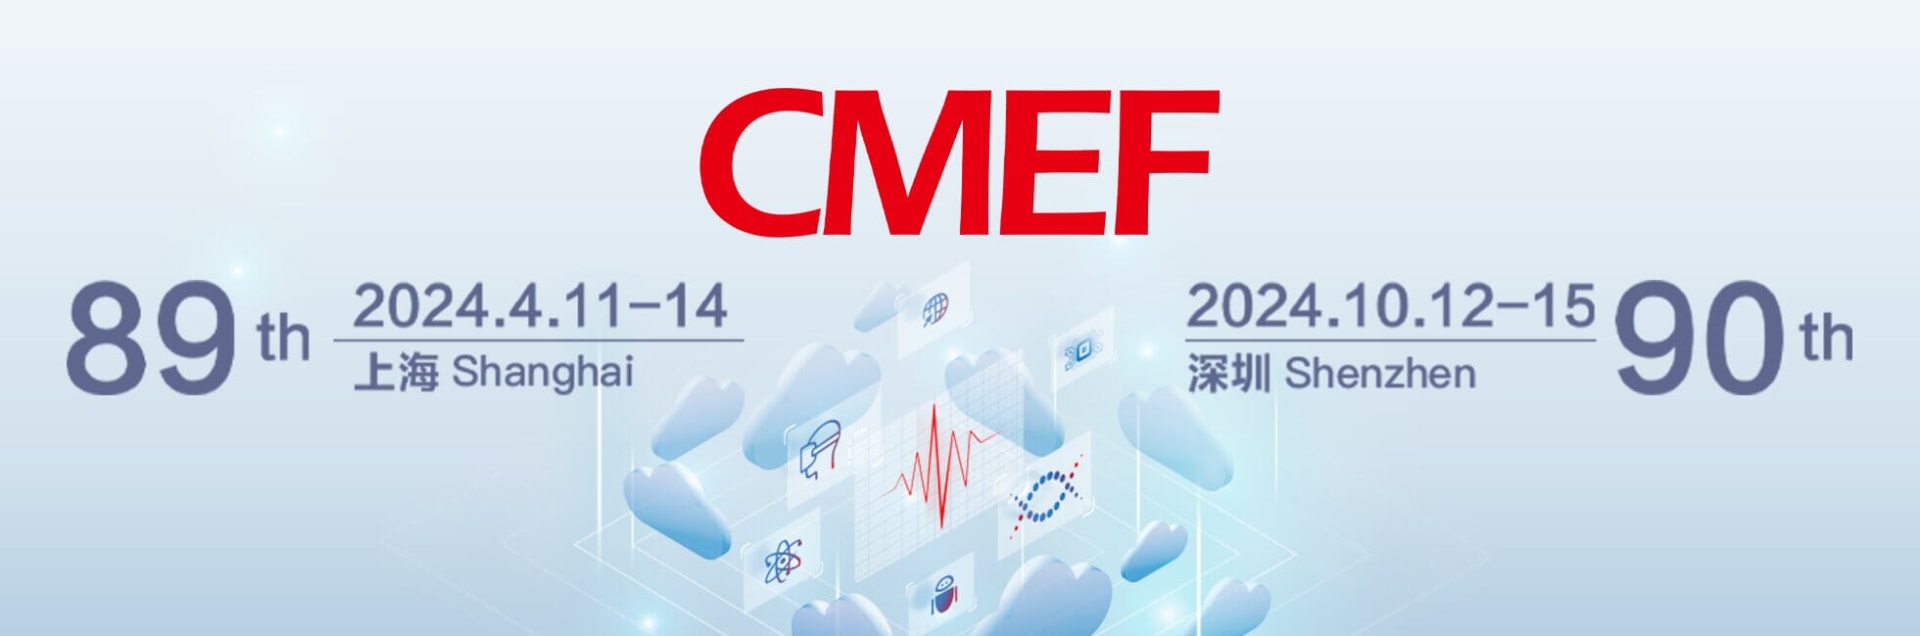 【上海医博会】2024第88届CMFF中国国际医疗器械博览会